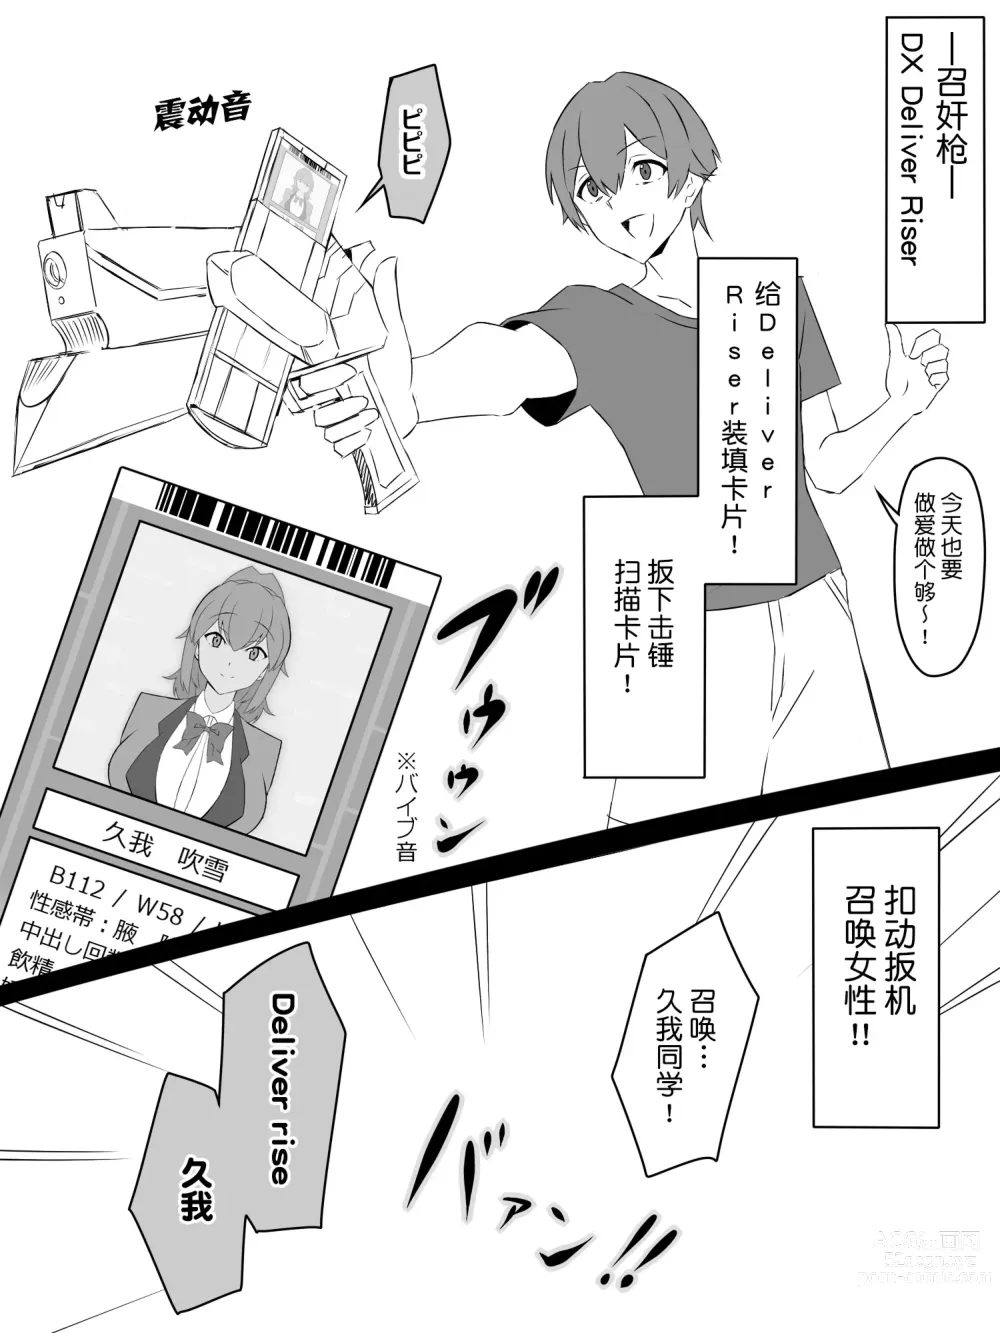 Page 2 of doujinshi Shoukanjuu DX DeliHealizer